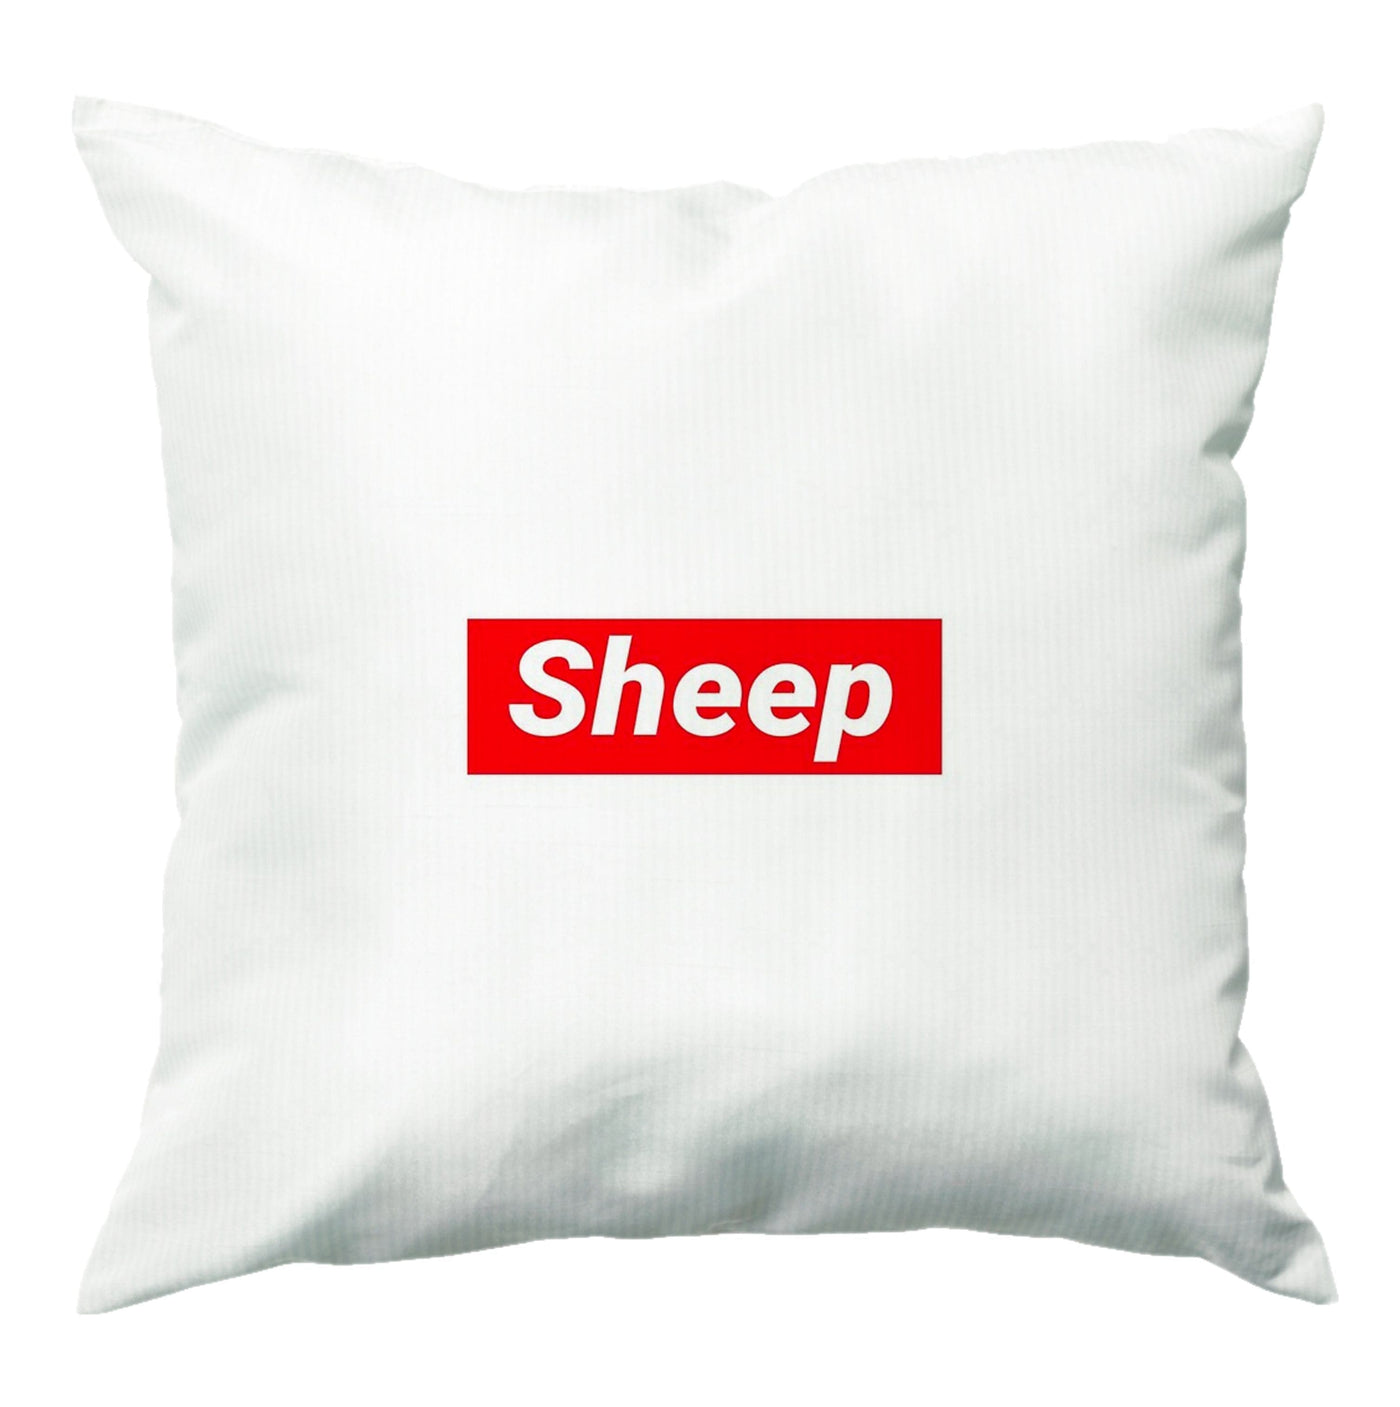 Sheep - Supreme Cushion